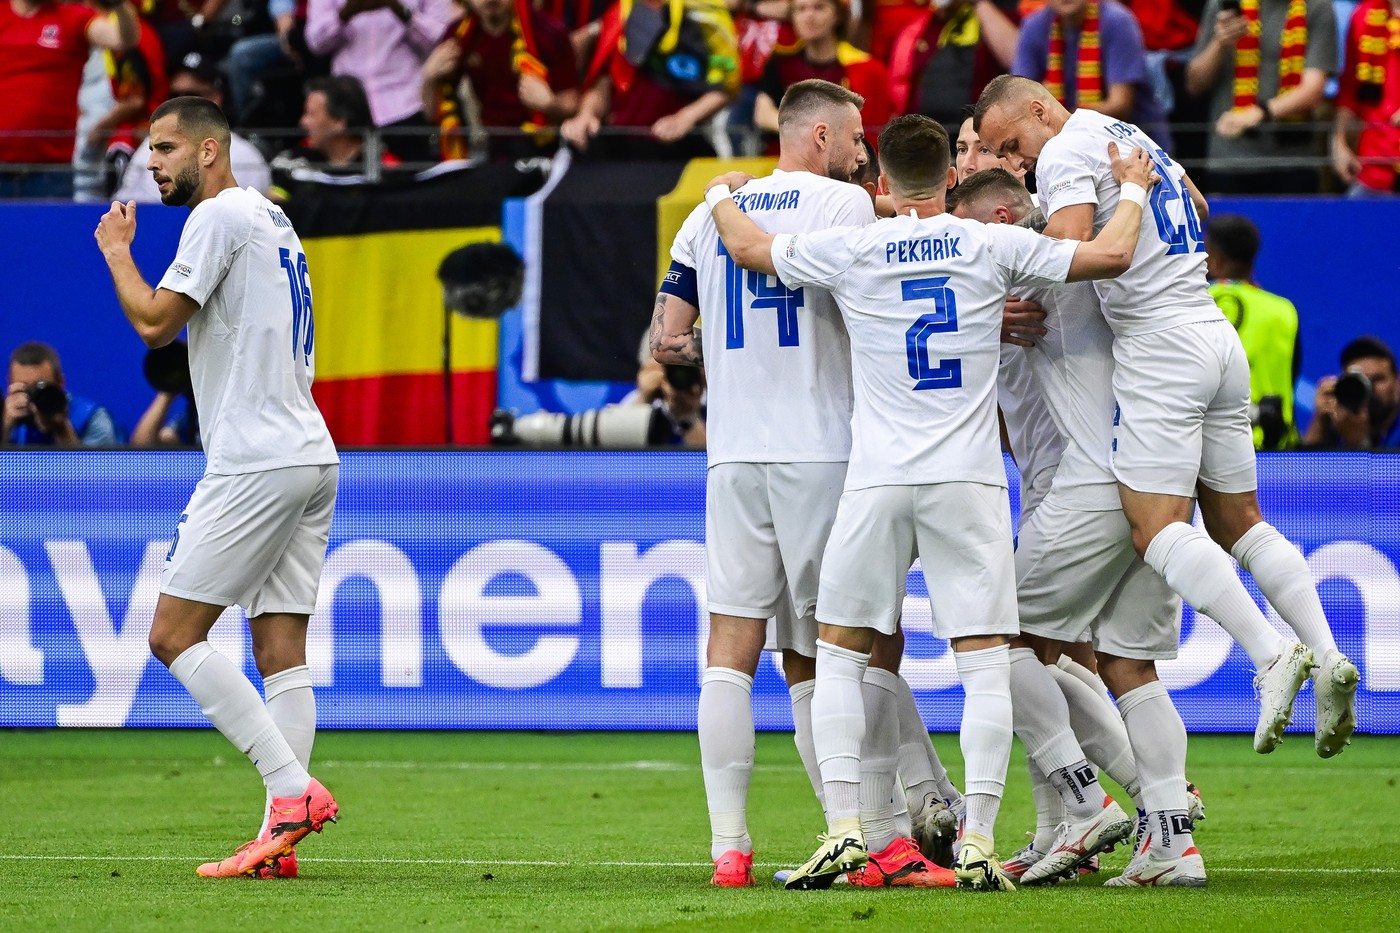 Au făcut calculele! Ce rezultat își doresc slovacii în meciul decisiv cu România de la EURO 2024